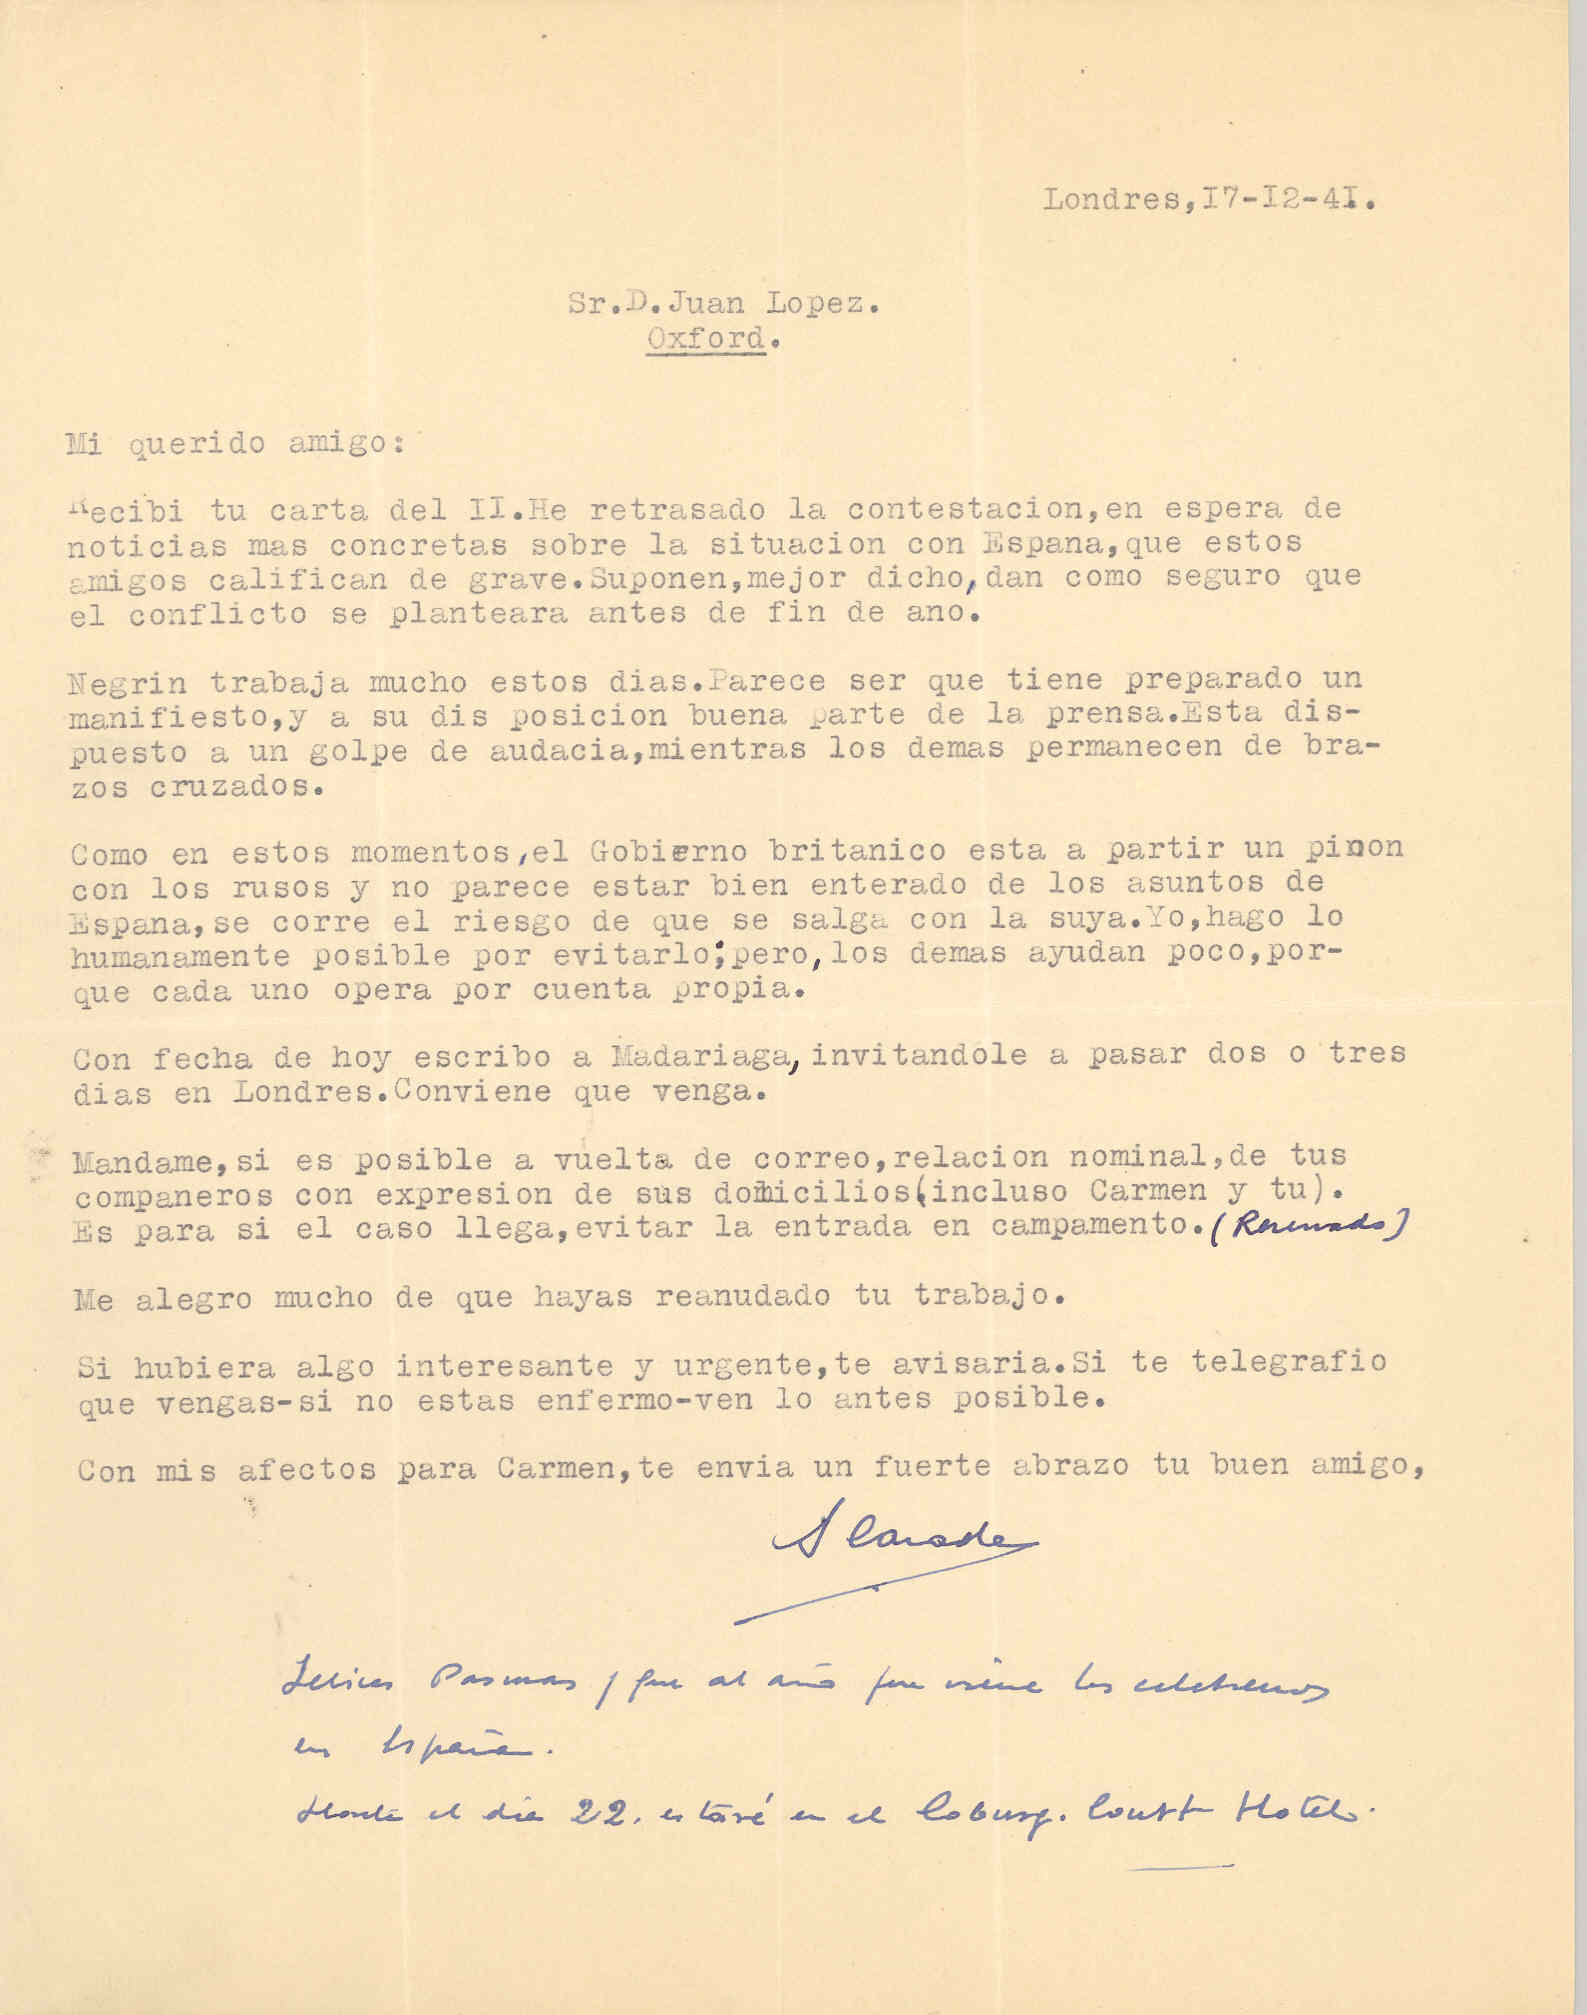 Carta de Segismundo Casado hablando de la grave situación de España ante el conflicto que se puede producir a final de año y de la preparación de Negrín para actuar.